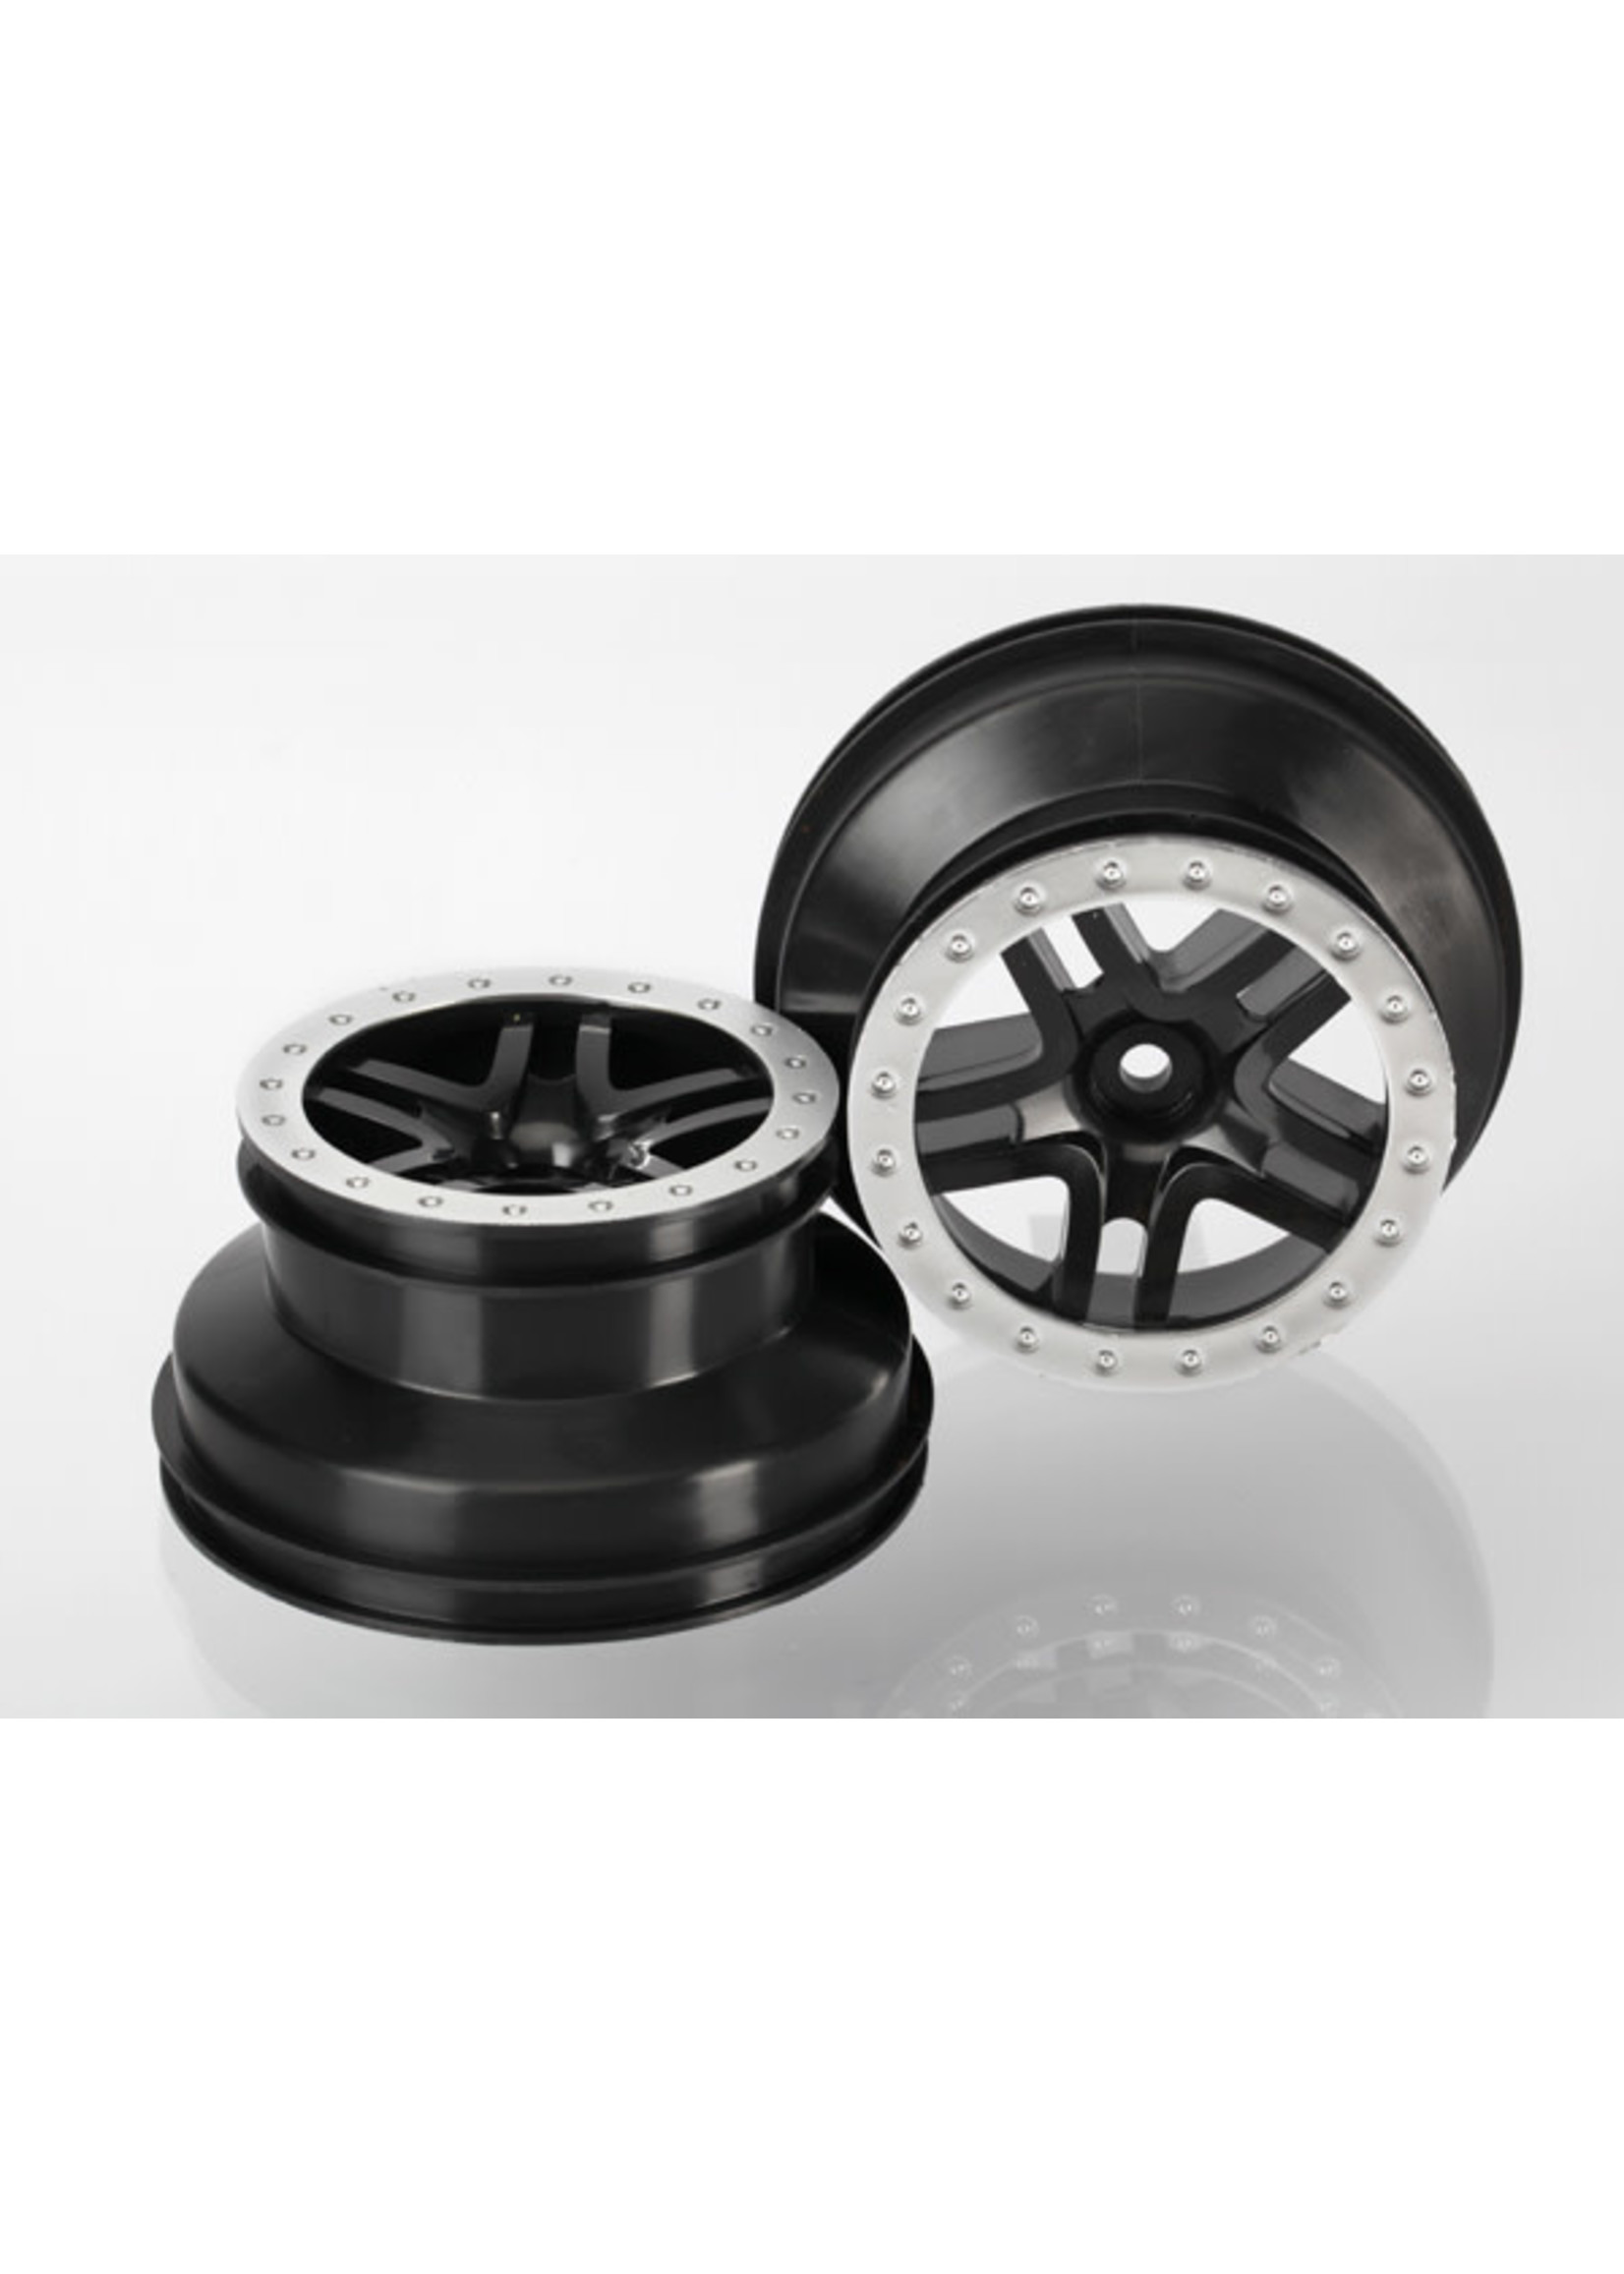 Traxxas TRA5886 Traxxas Wheels, SCT Split-Spoke, black, satin chrome beadlock style, dual profile (2.2' outer, 3.0' inner) (2WD front) (2)